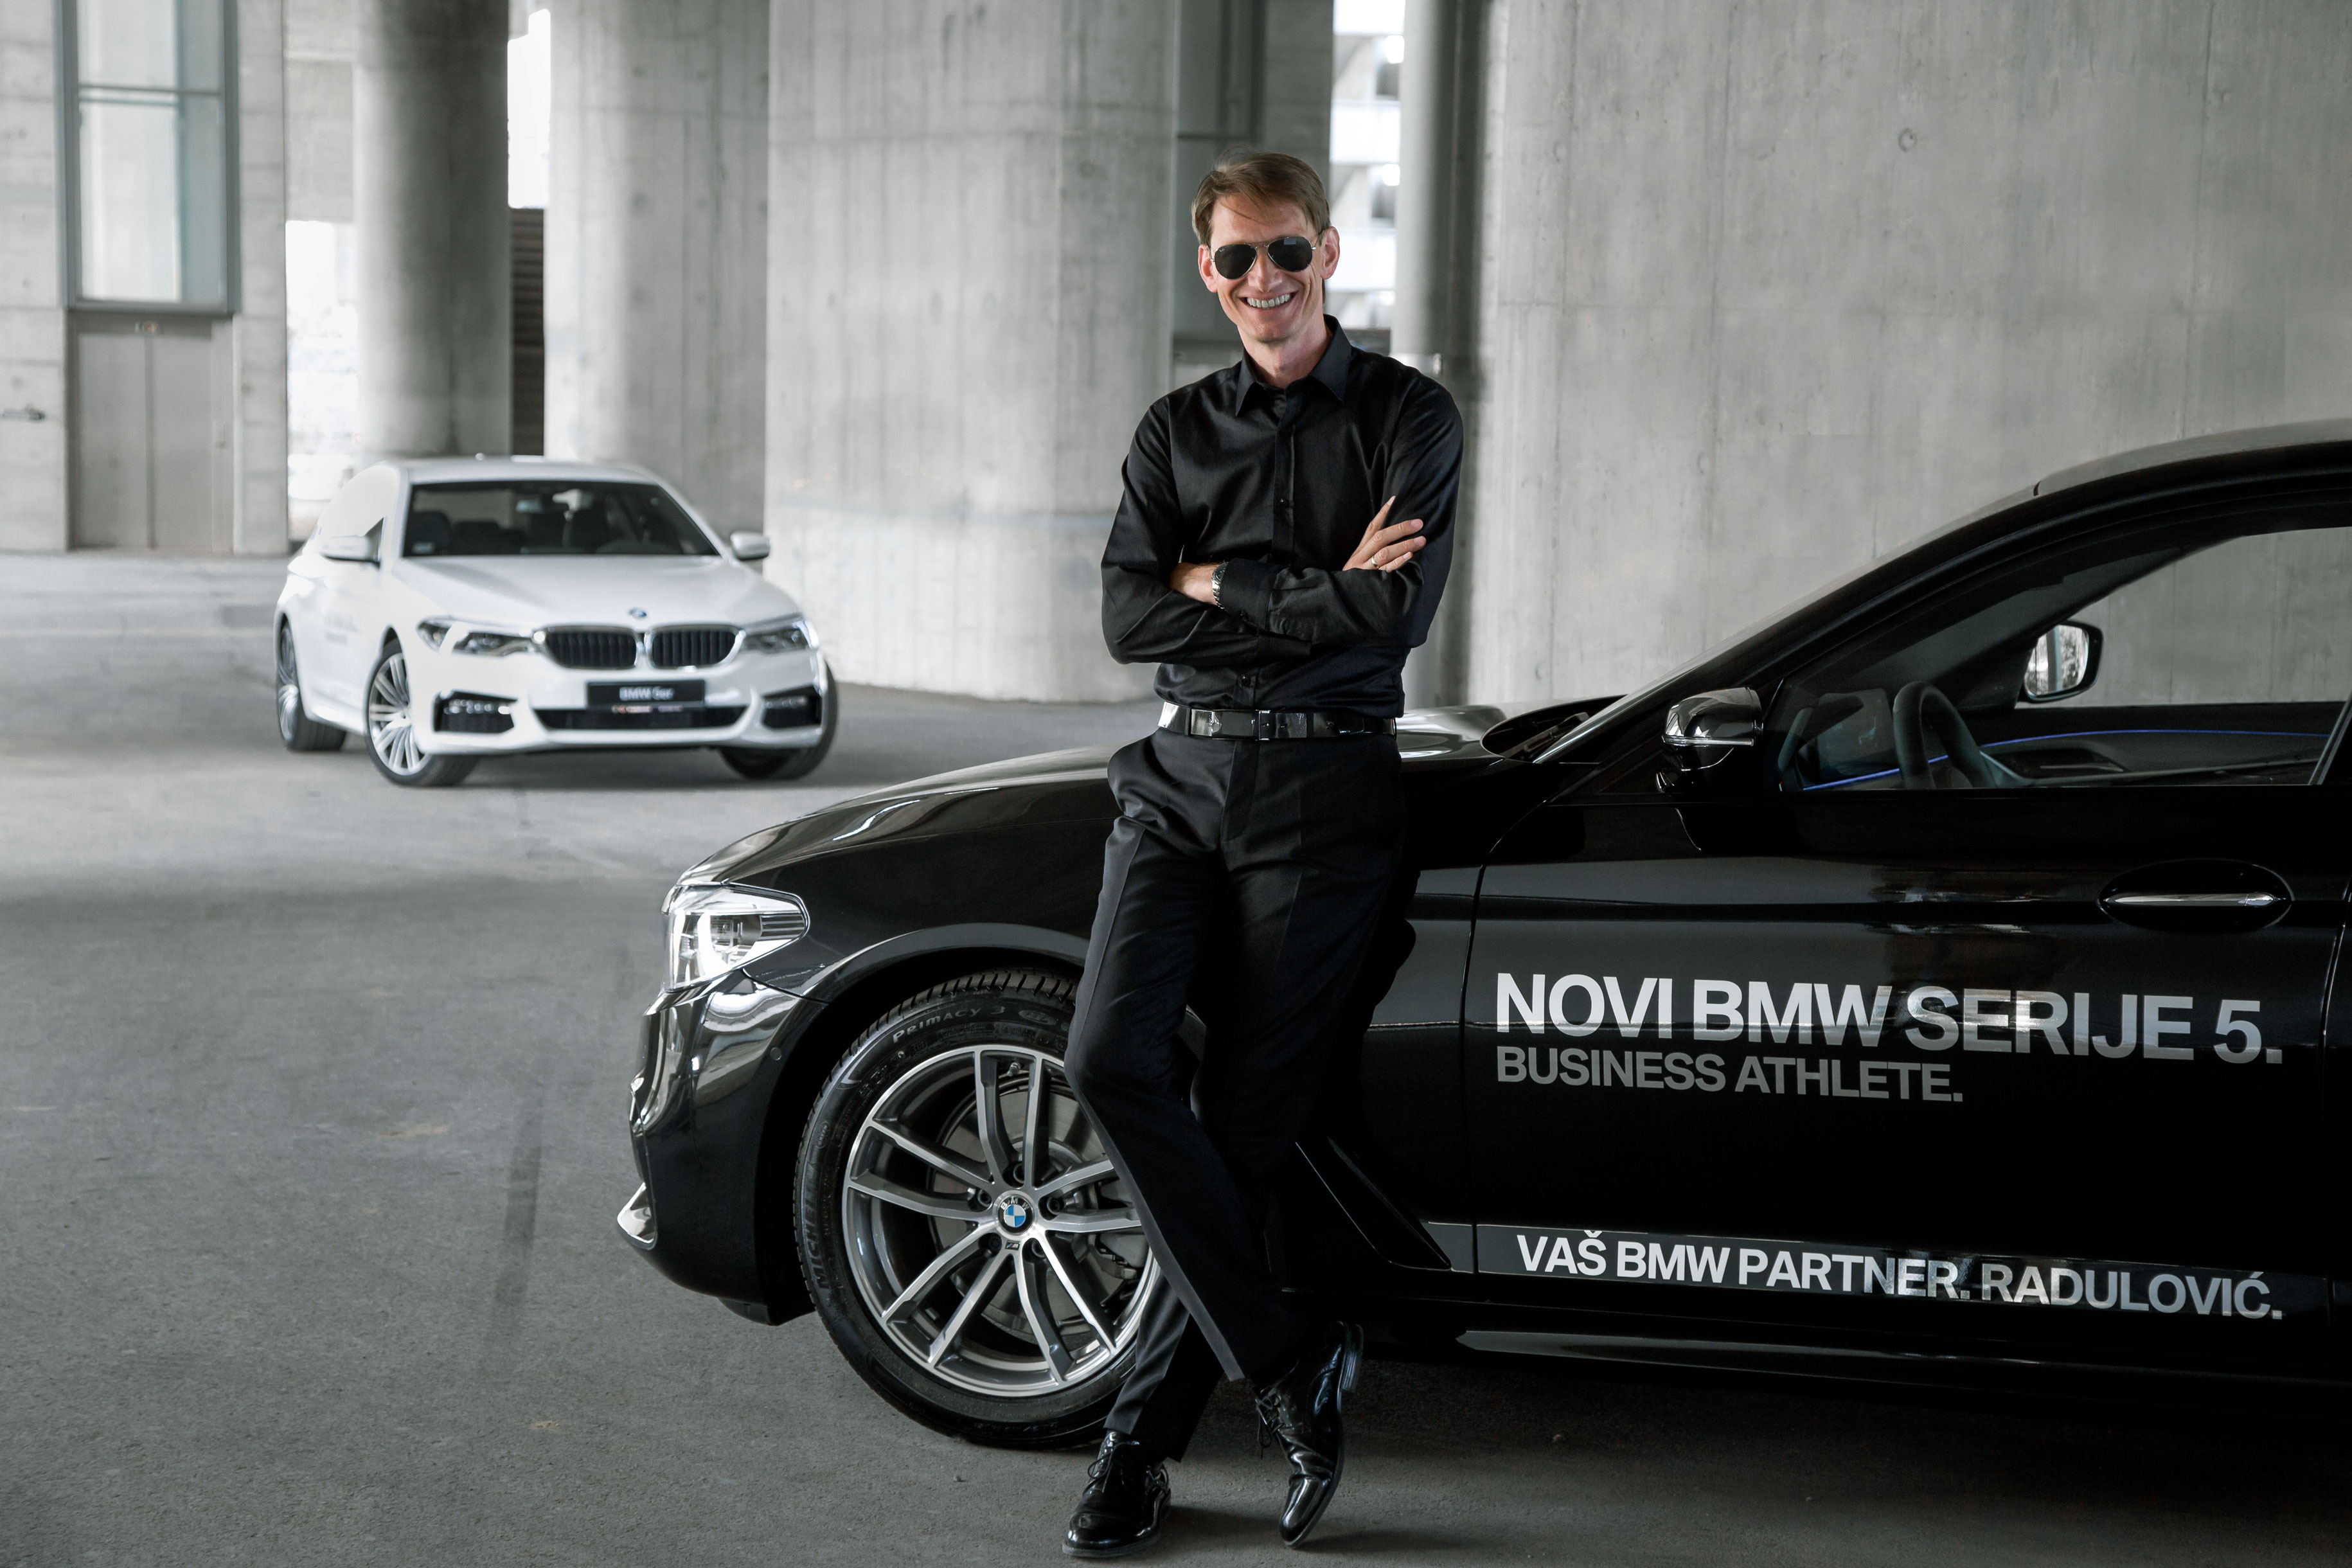 Kompanija Radulović svečano je uručila ključ automobila BMW serije 5 Goranu Obradoviću, najtrofejnijem atletskom treneru u istoriji Srbije